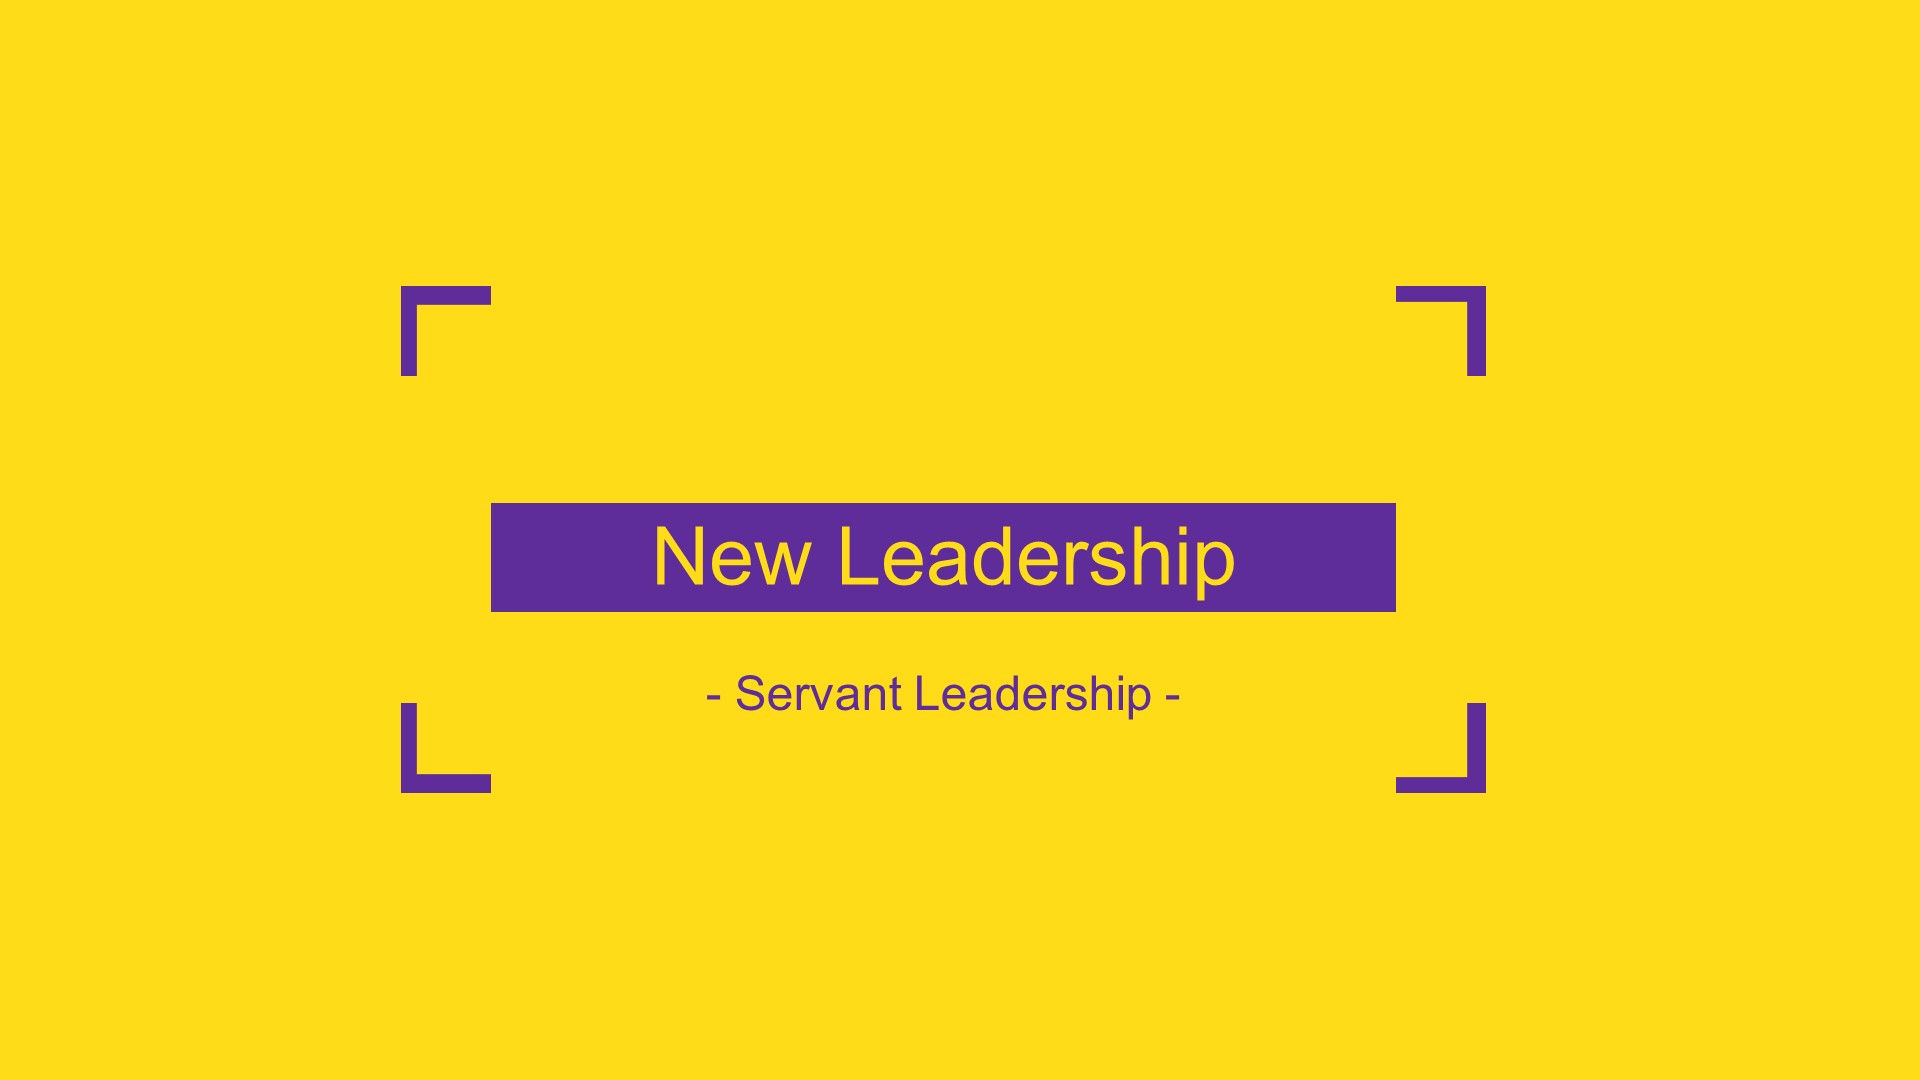 New Leadership - Servant Leadership